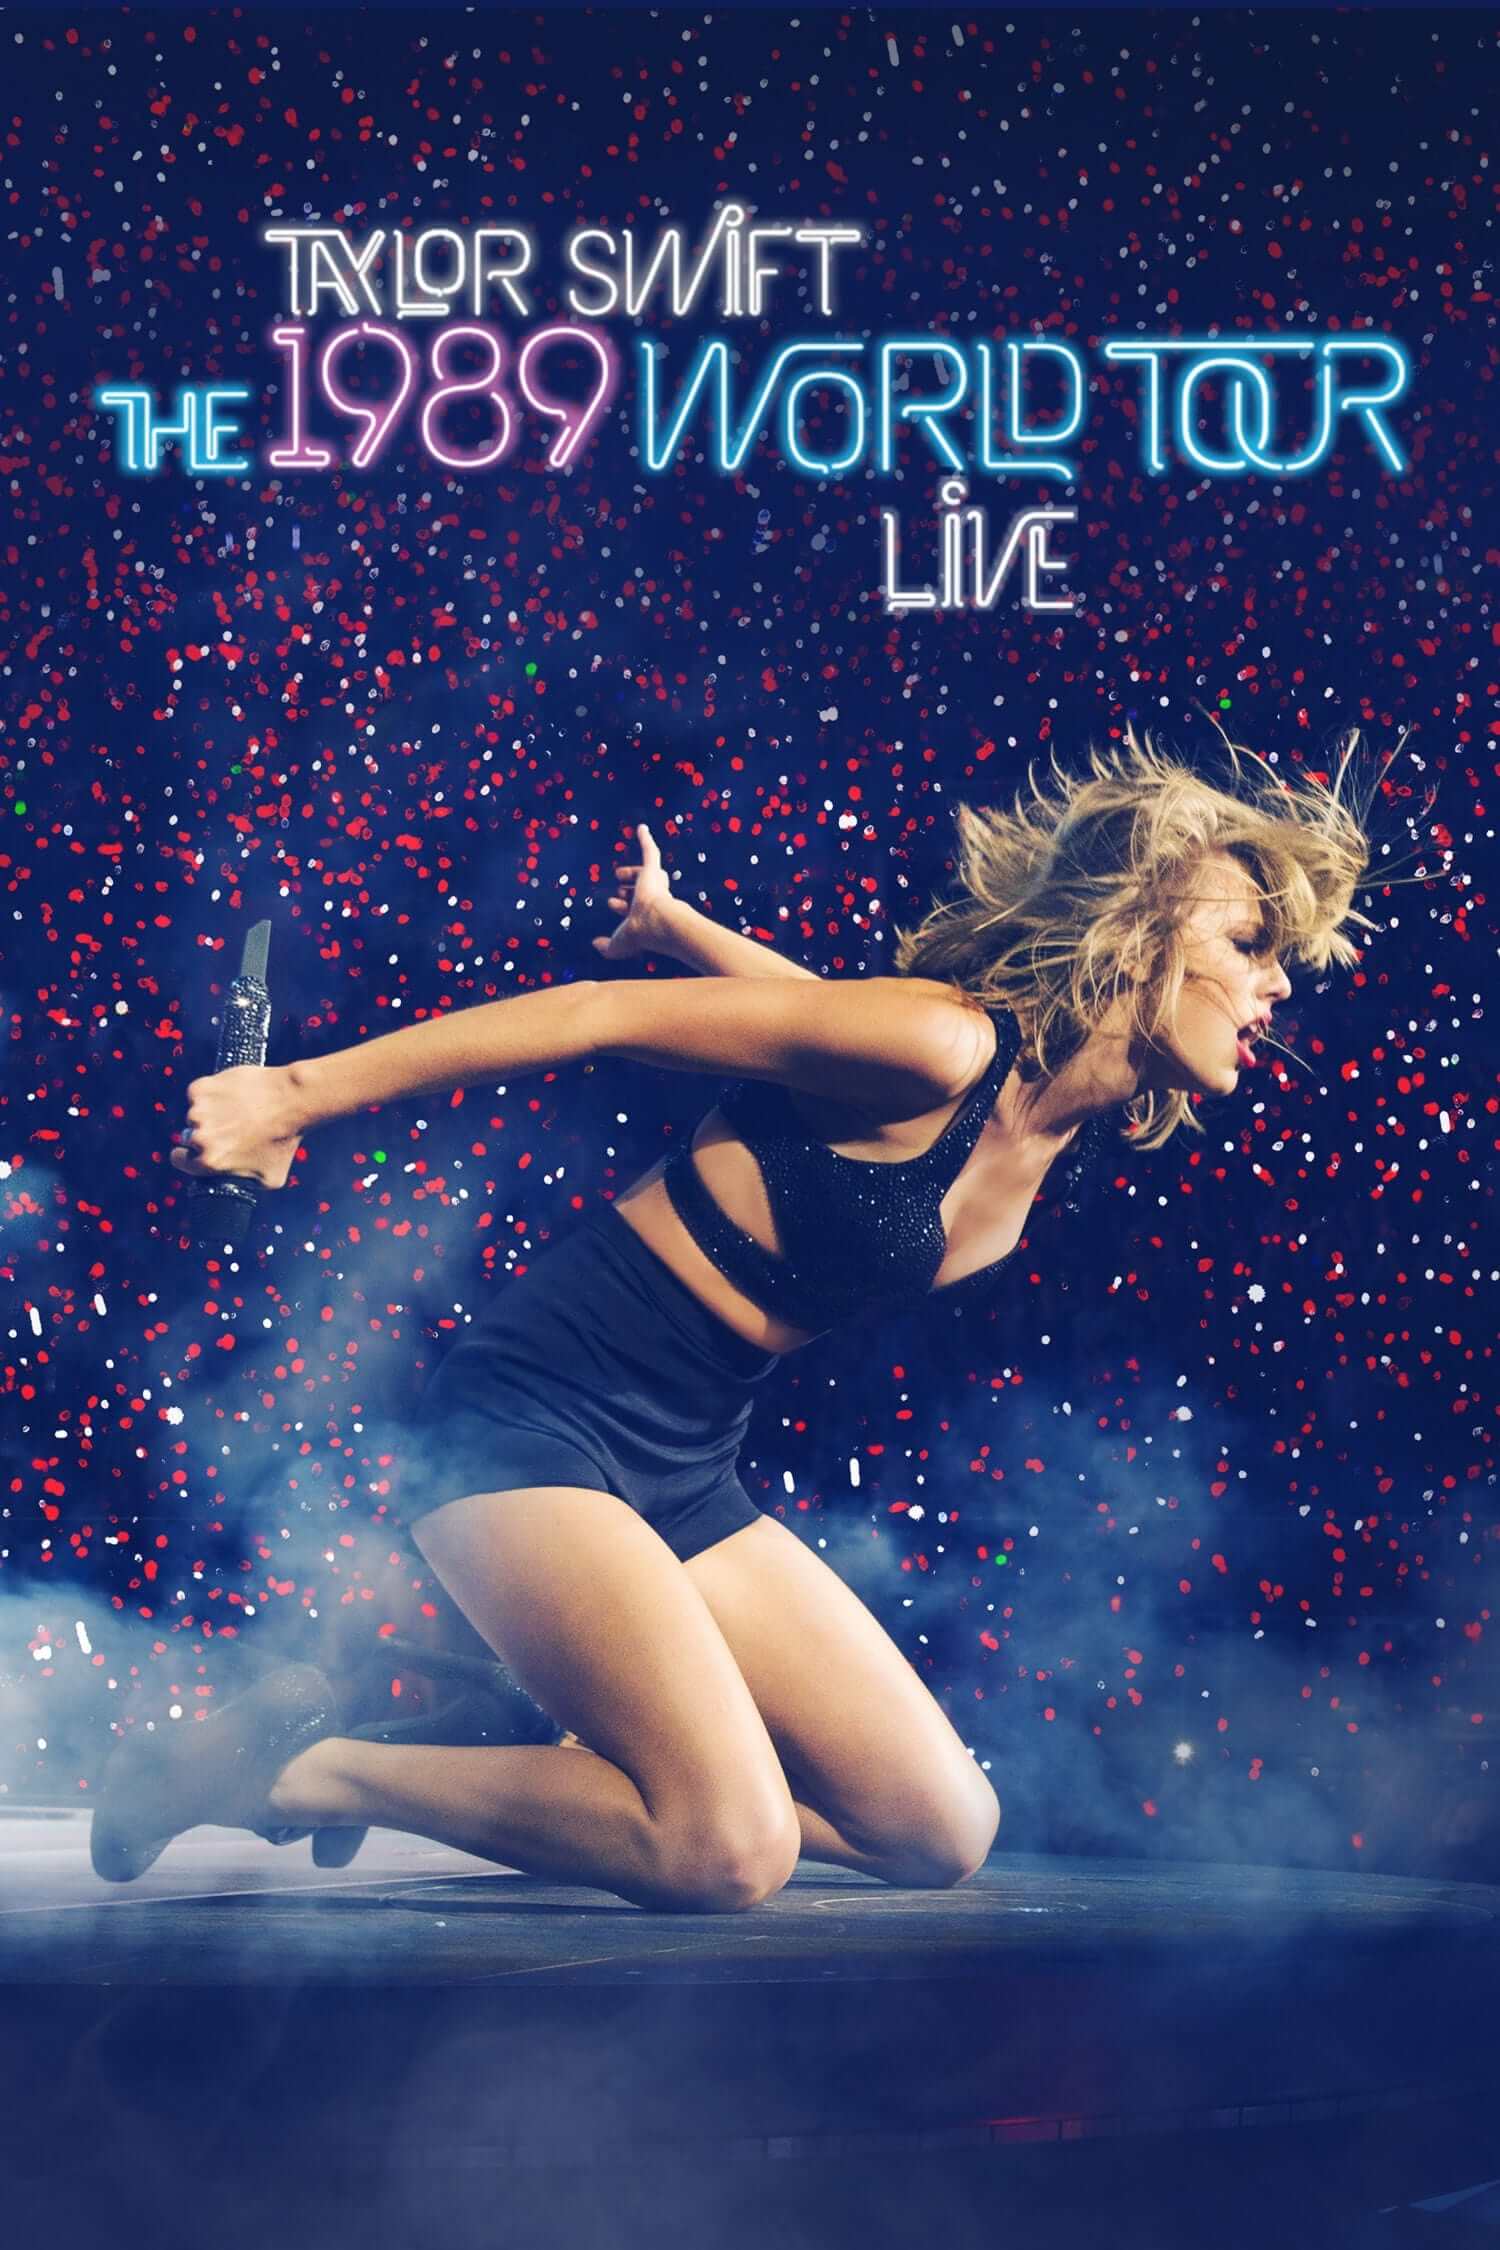 تیلور سویفت: تور جهانی 1989 زنده (Taylor Swift: The 1989 World Tour Live)